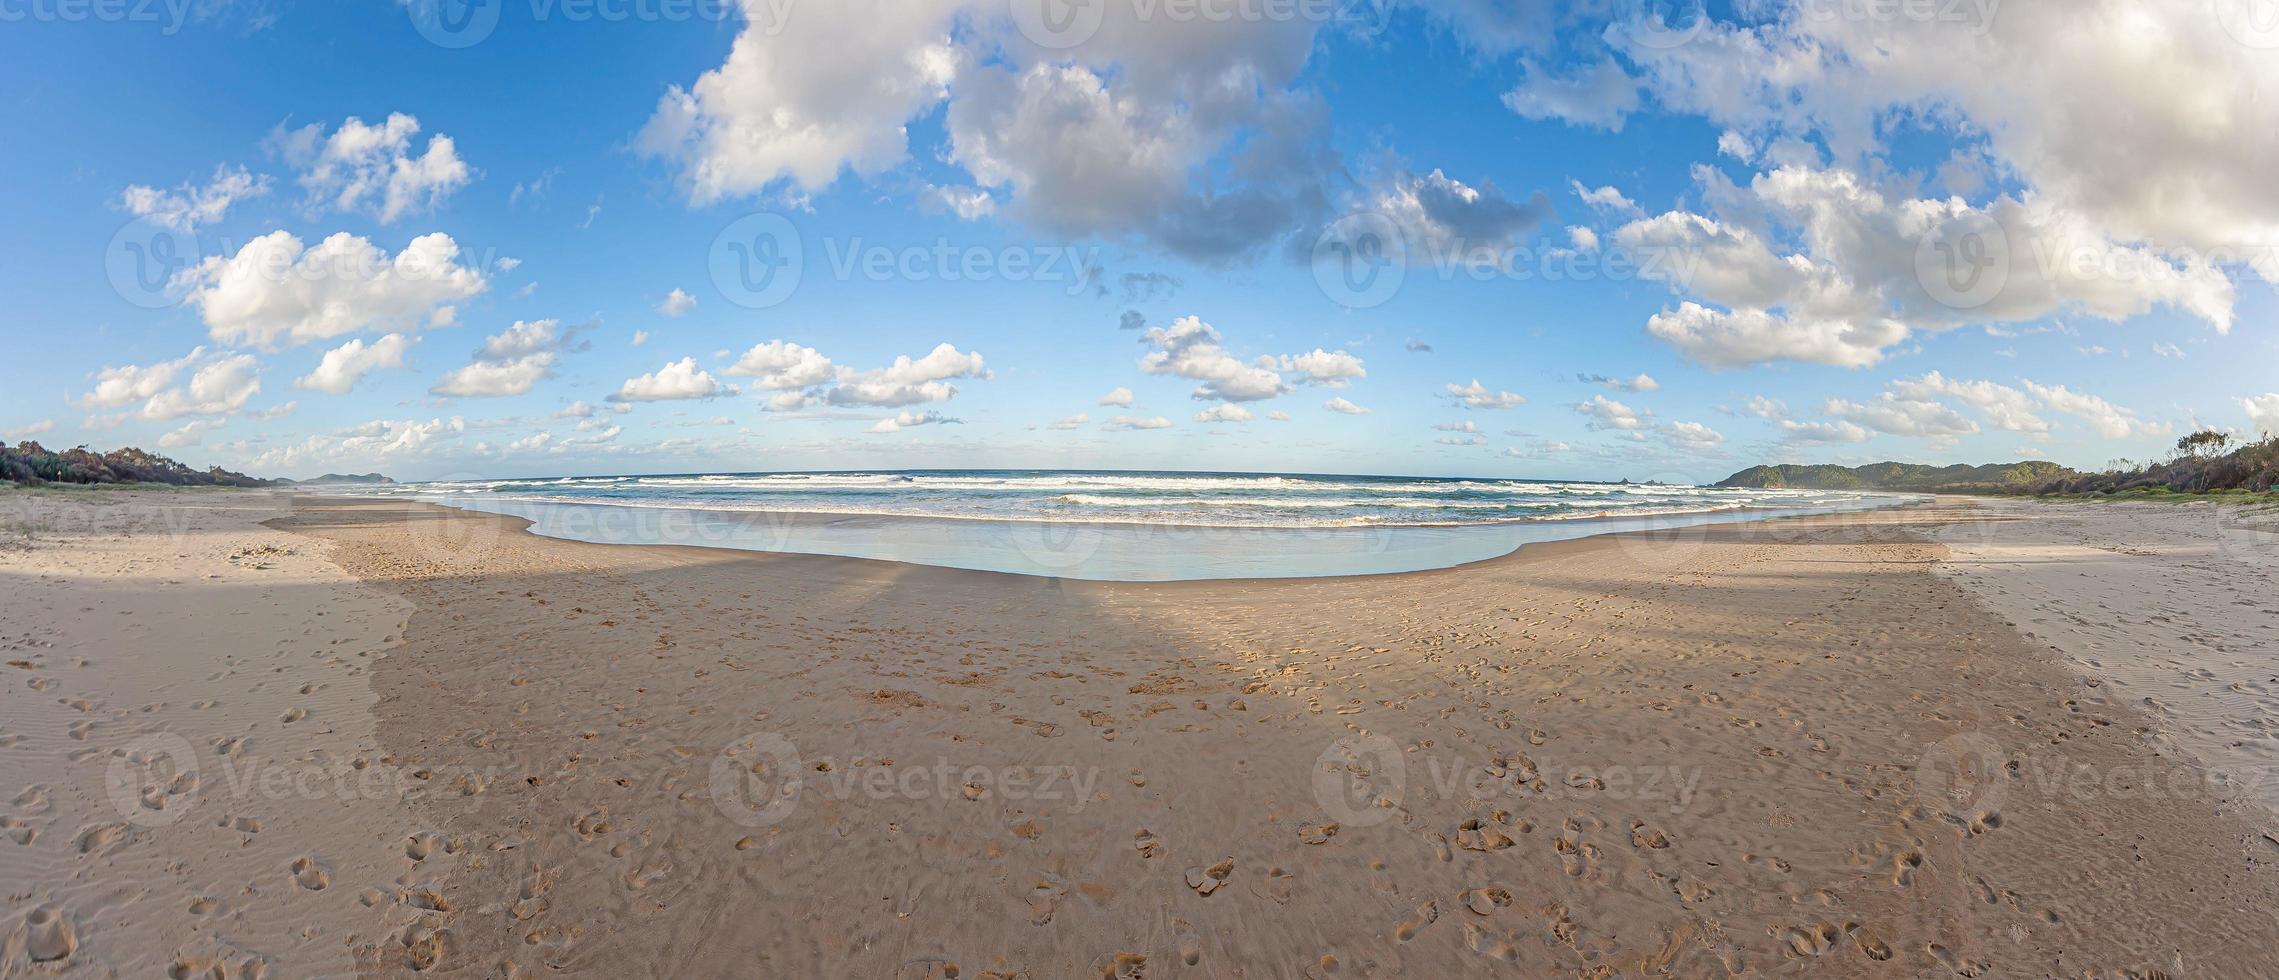 panorama sobre una playa paradisíaca en la costa dorada australiana en el estado de queensland foto